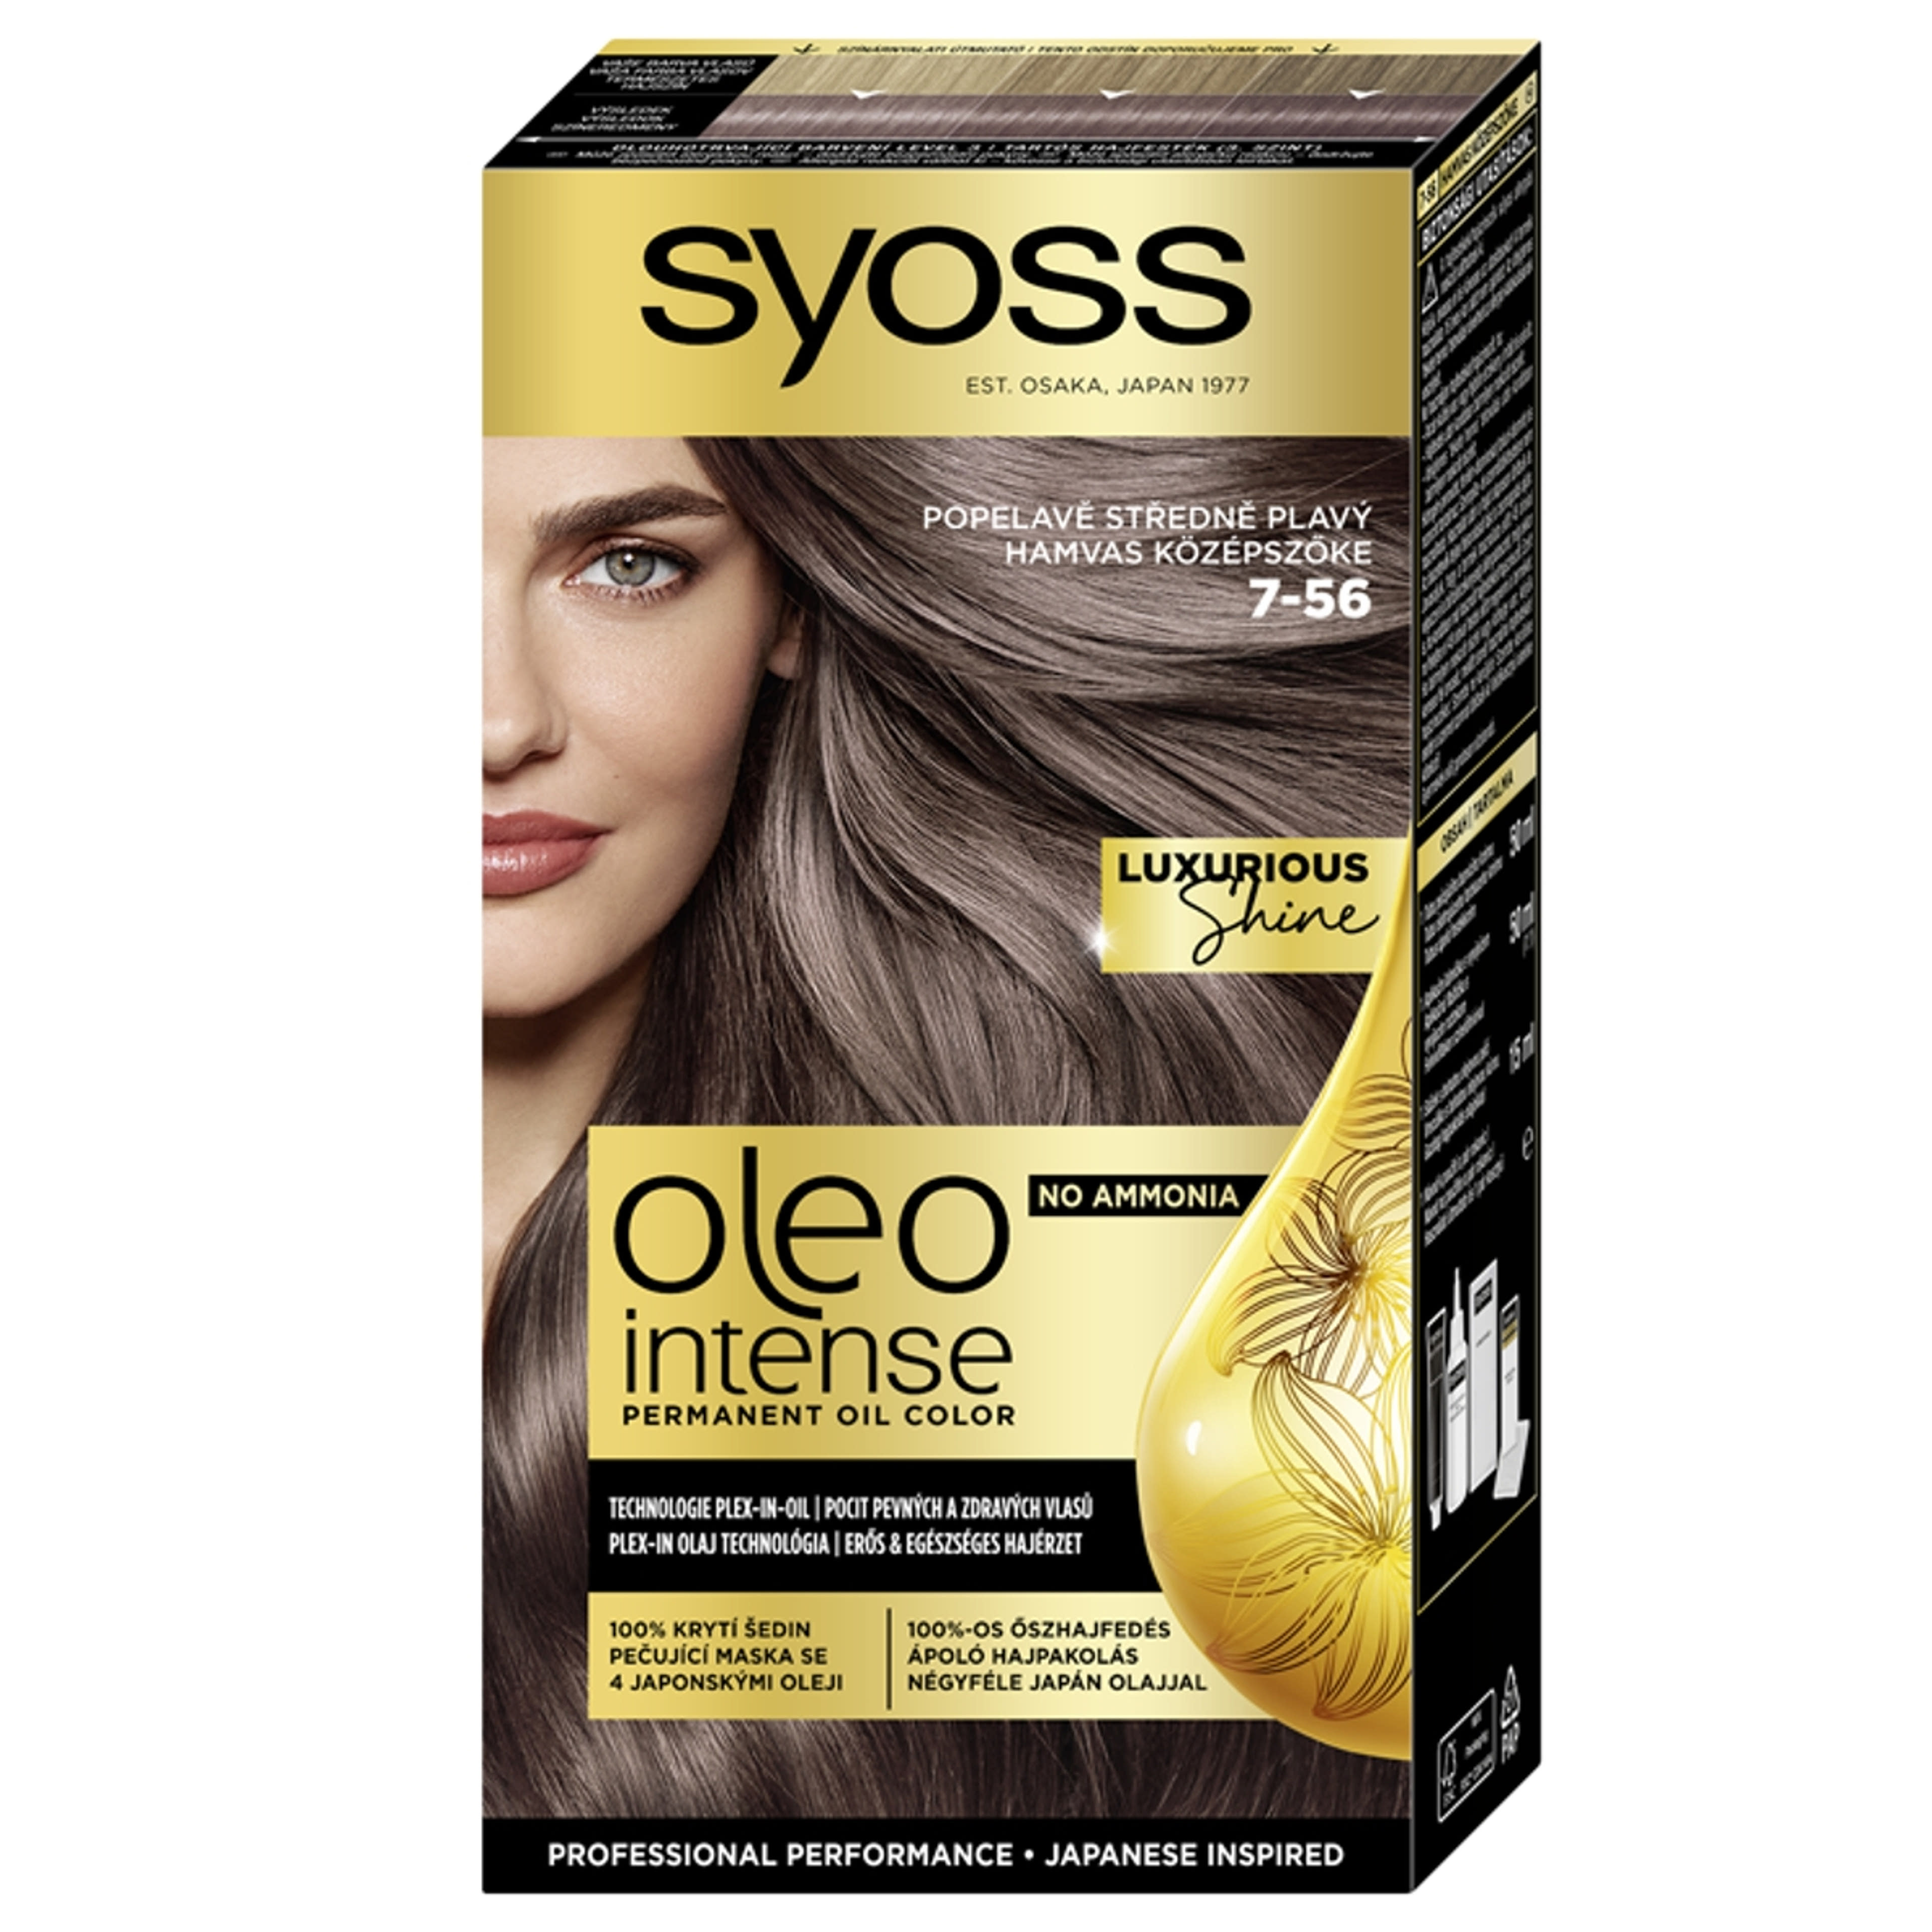 Syoss Oleo Intense tartós hajfesték 7-56 hamvas középszőke - 1 db